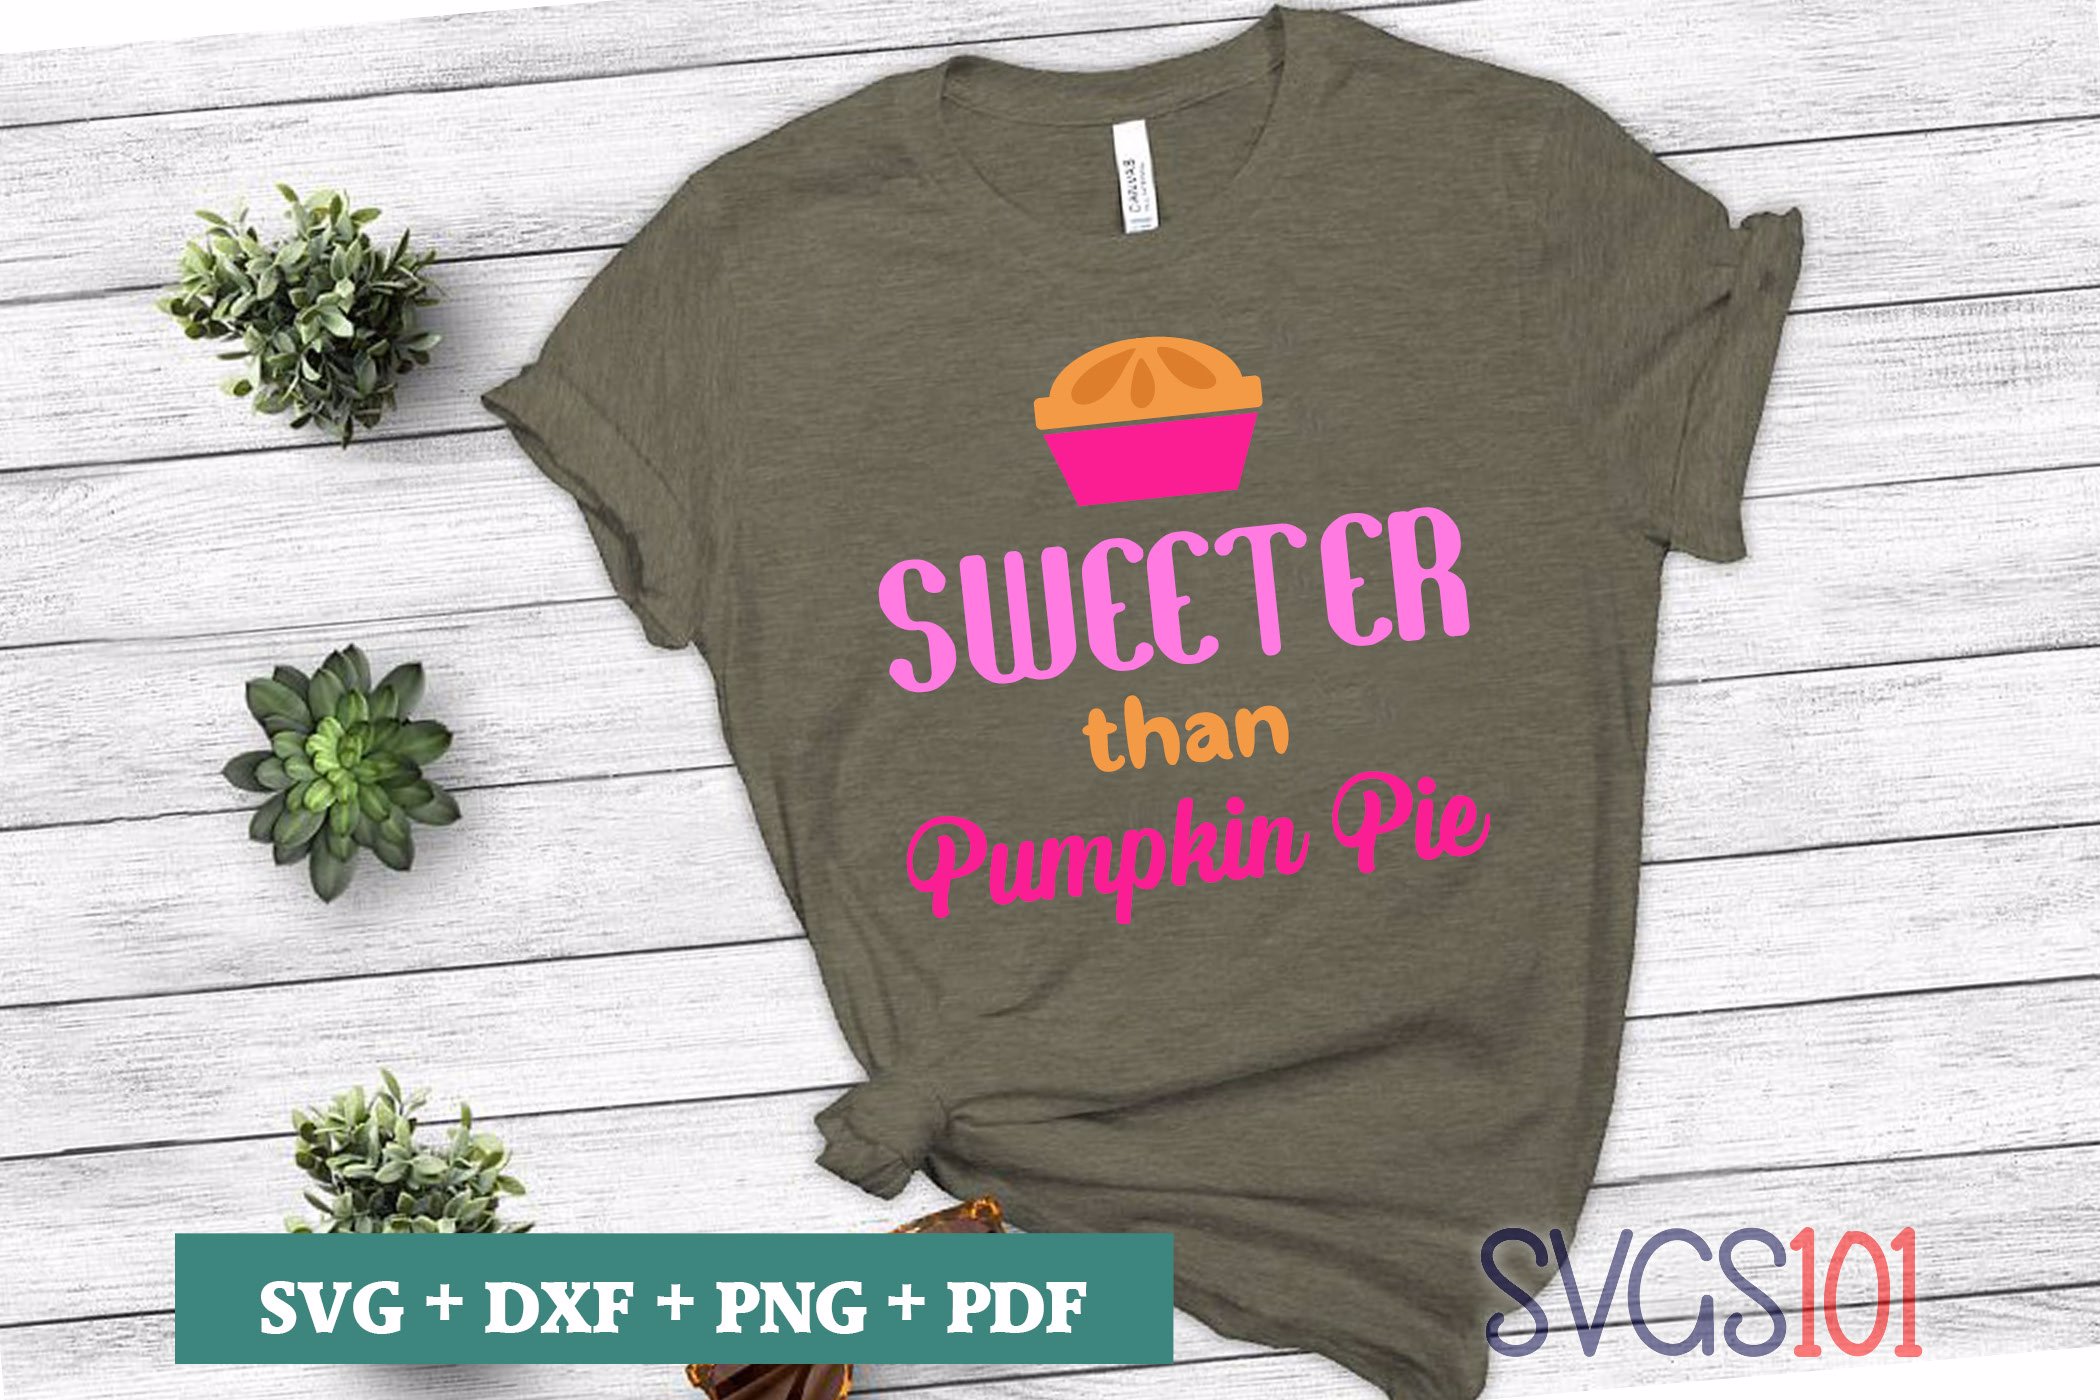 Sweeter Than Pumpkin Pie